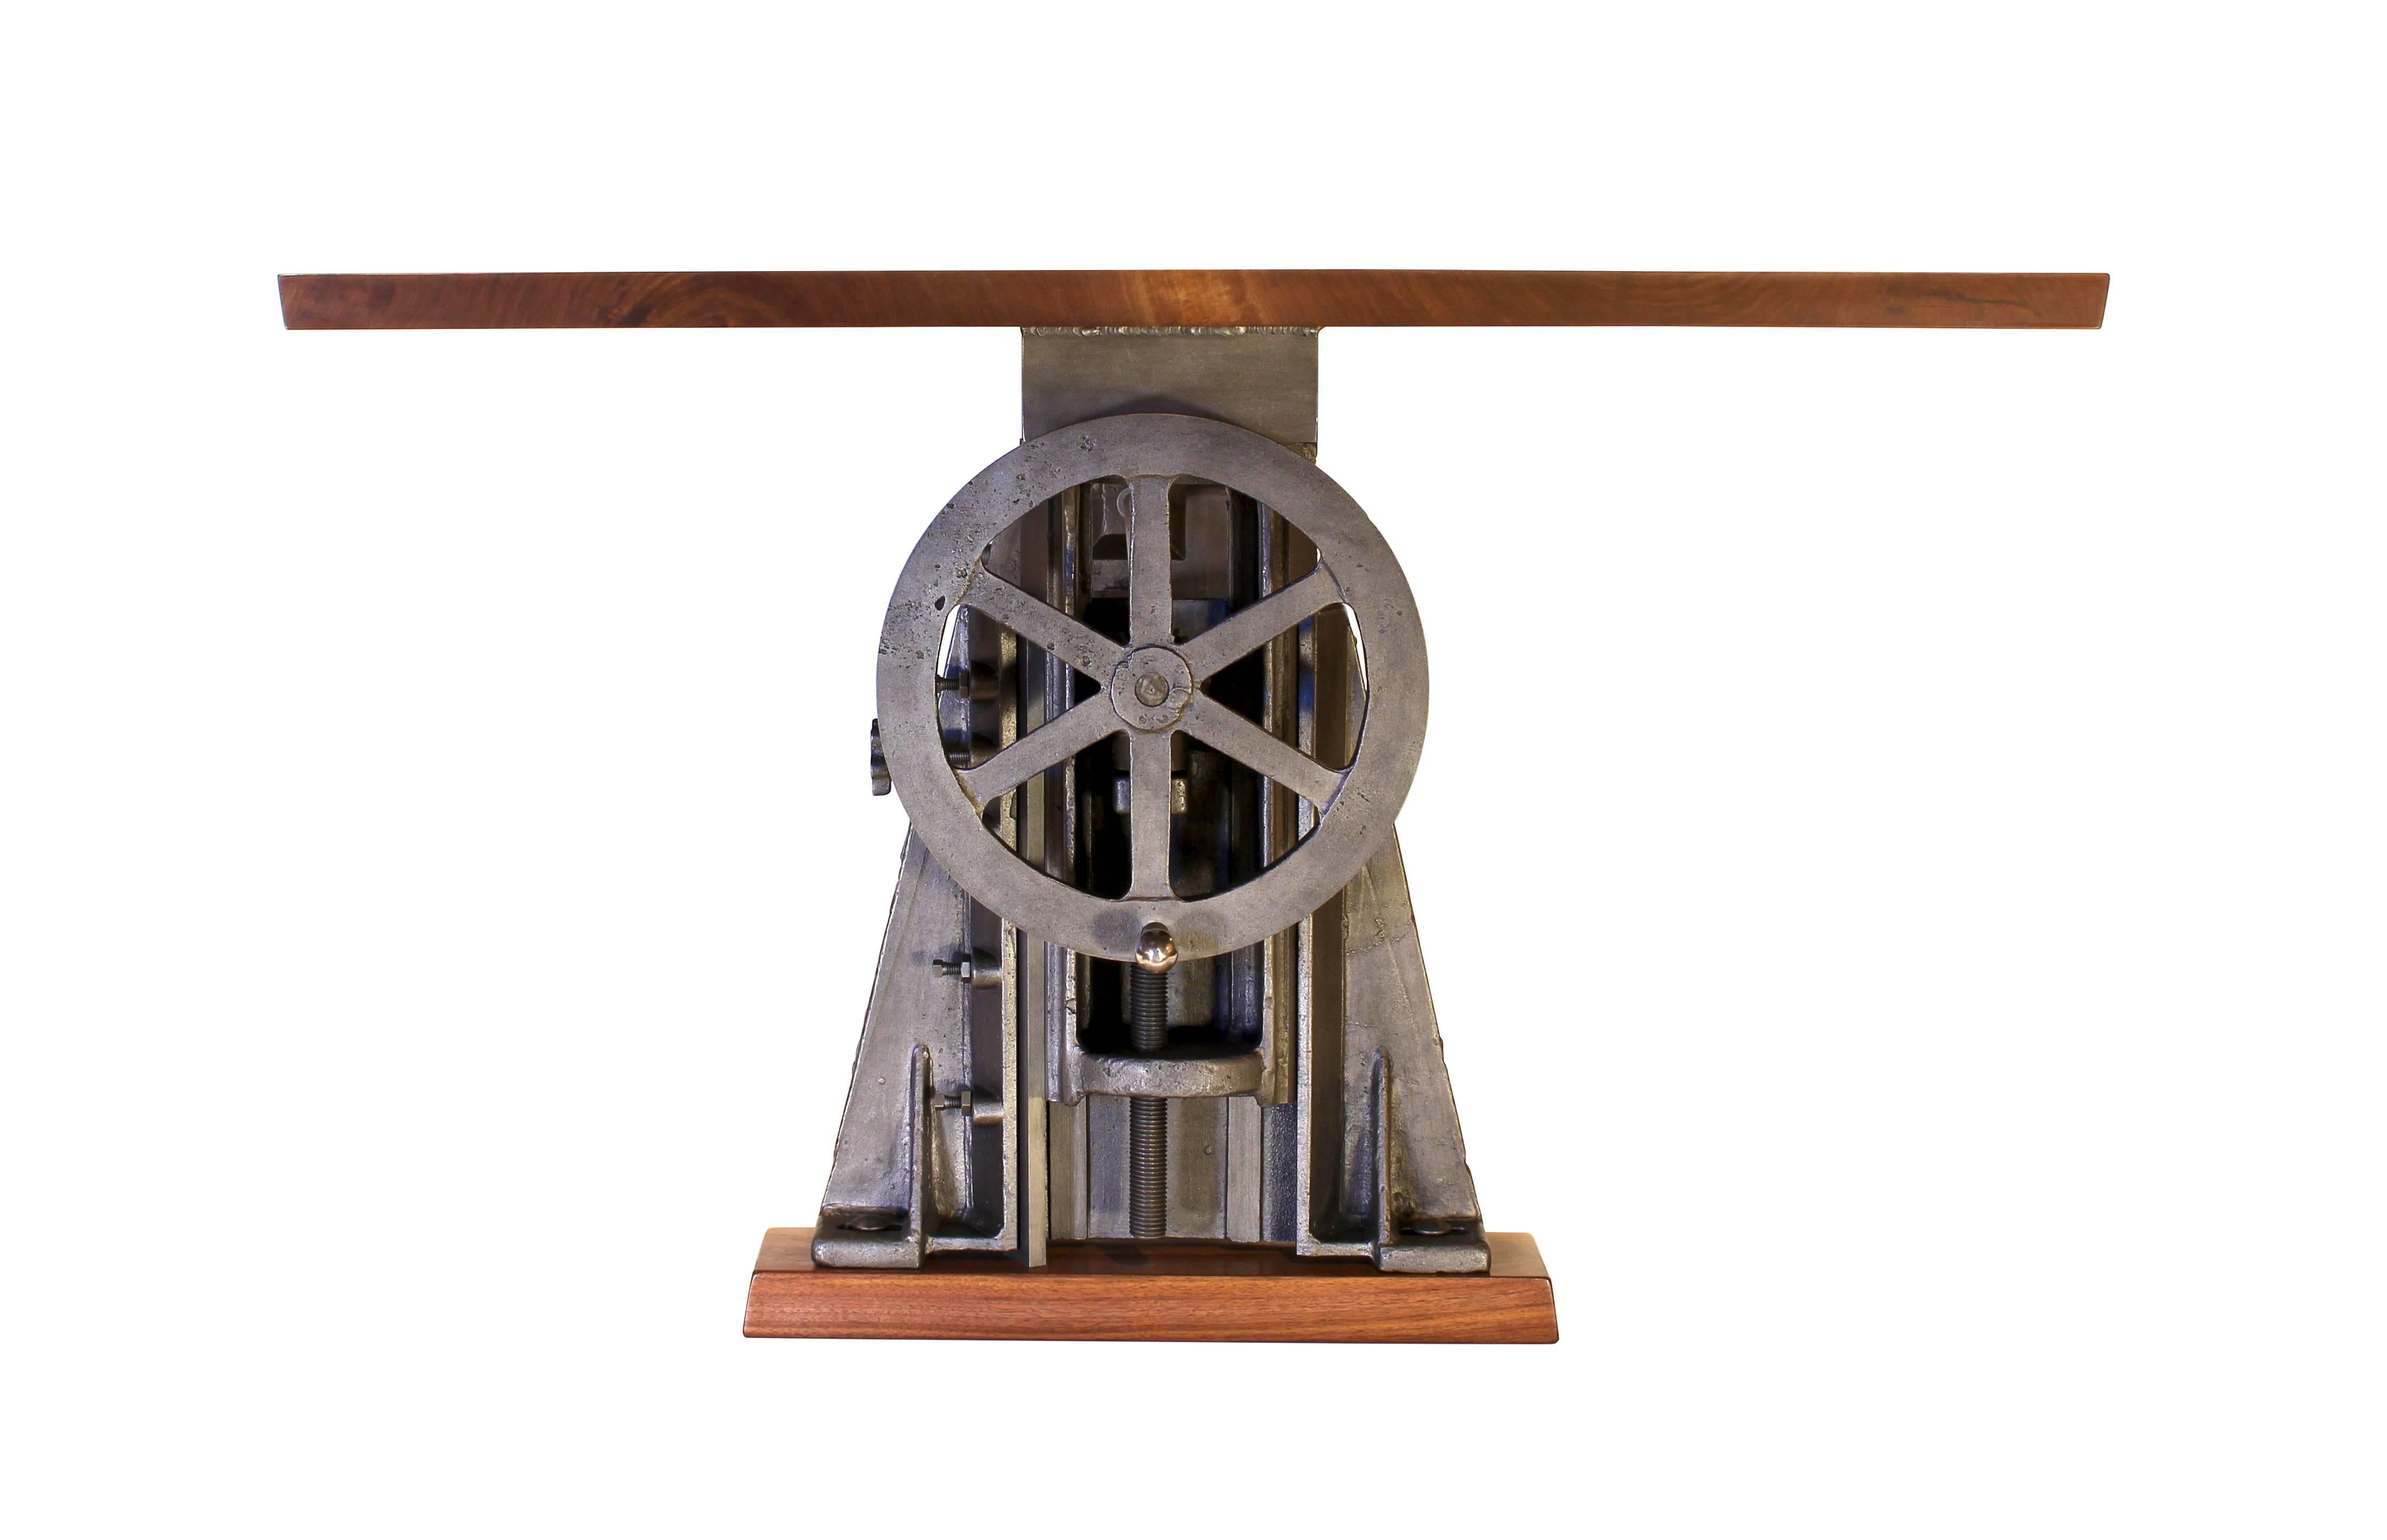 Industrieller Konferenz- und Esstisch aus Gusseisen mit Kurbelantrieb. Authentisches Maschinengestell aus Gusseisen, ca. 1920er Jahre. Die Platte ist 1 1/4